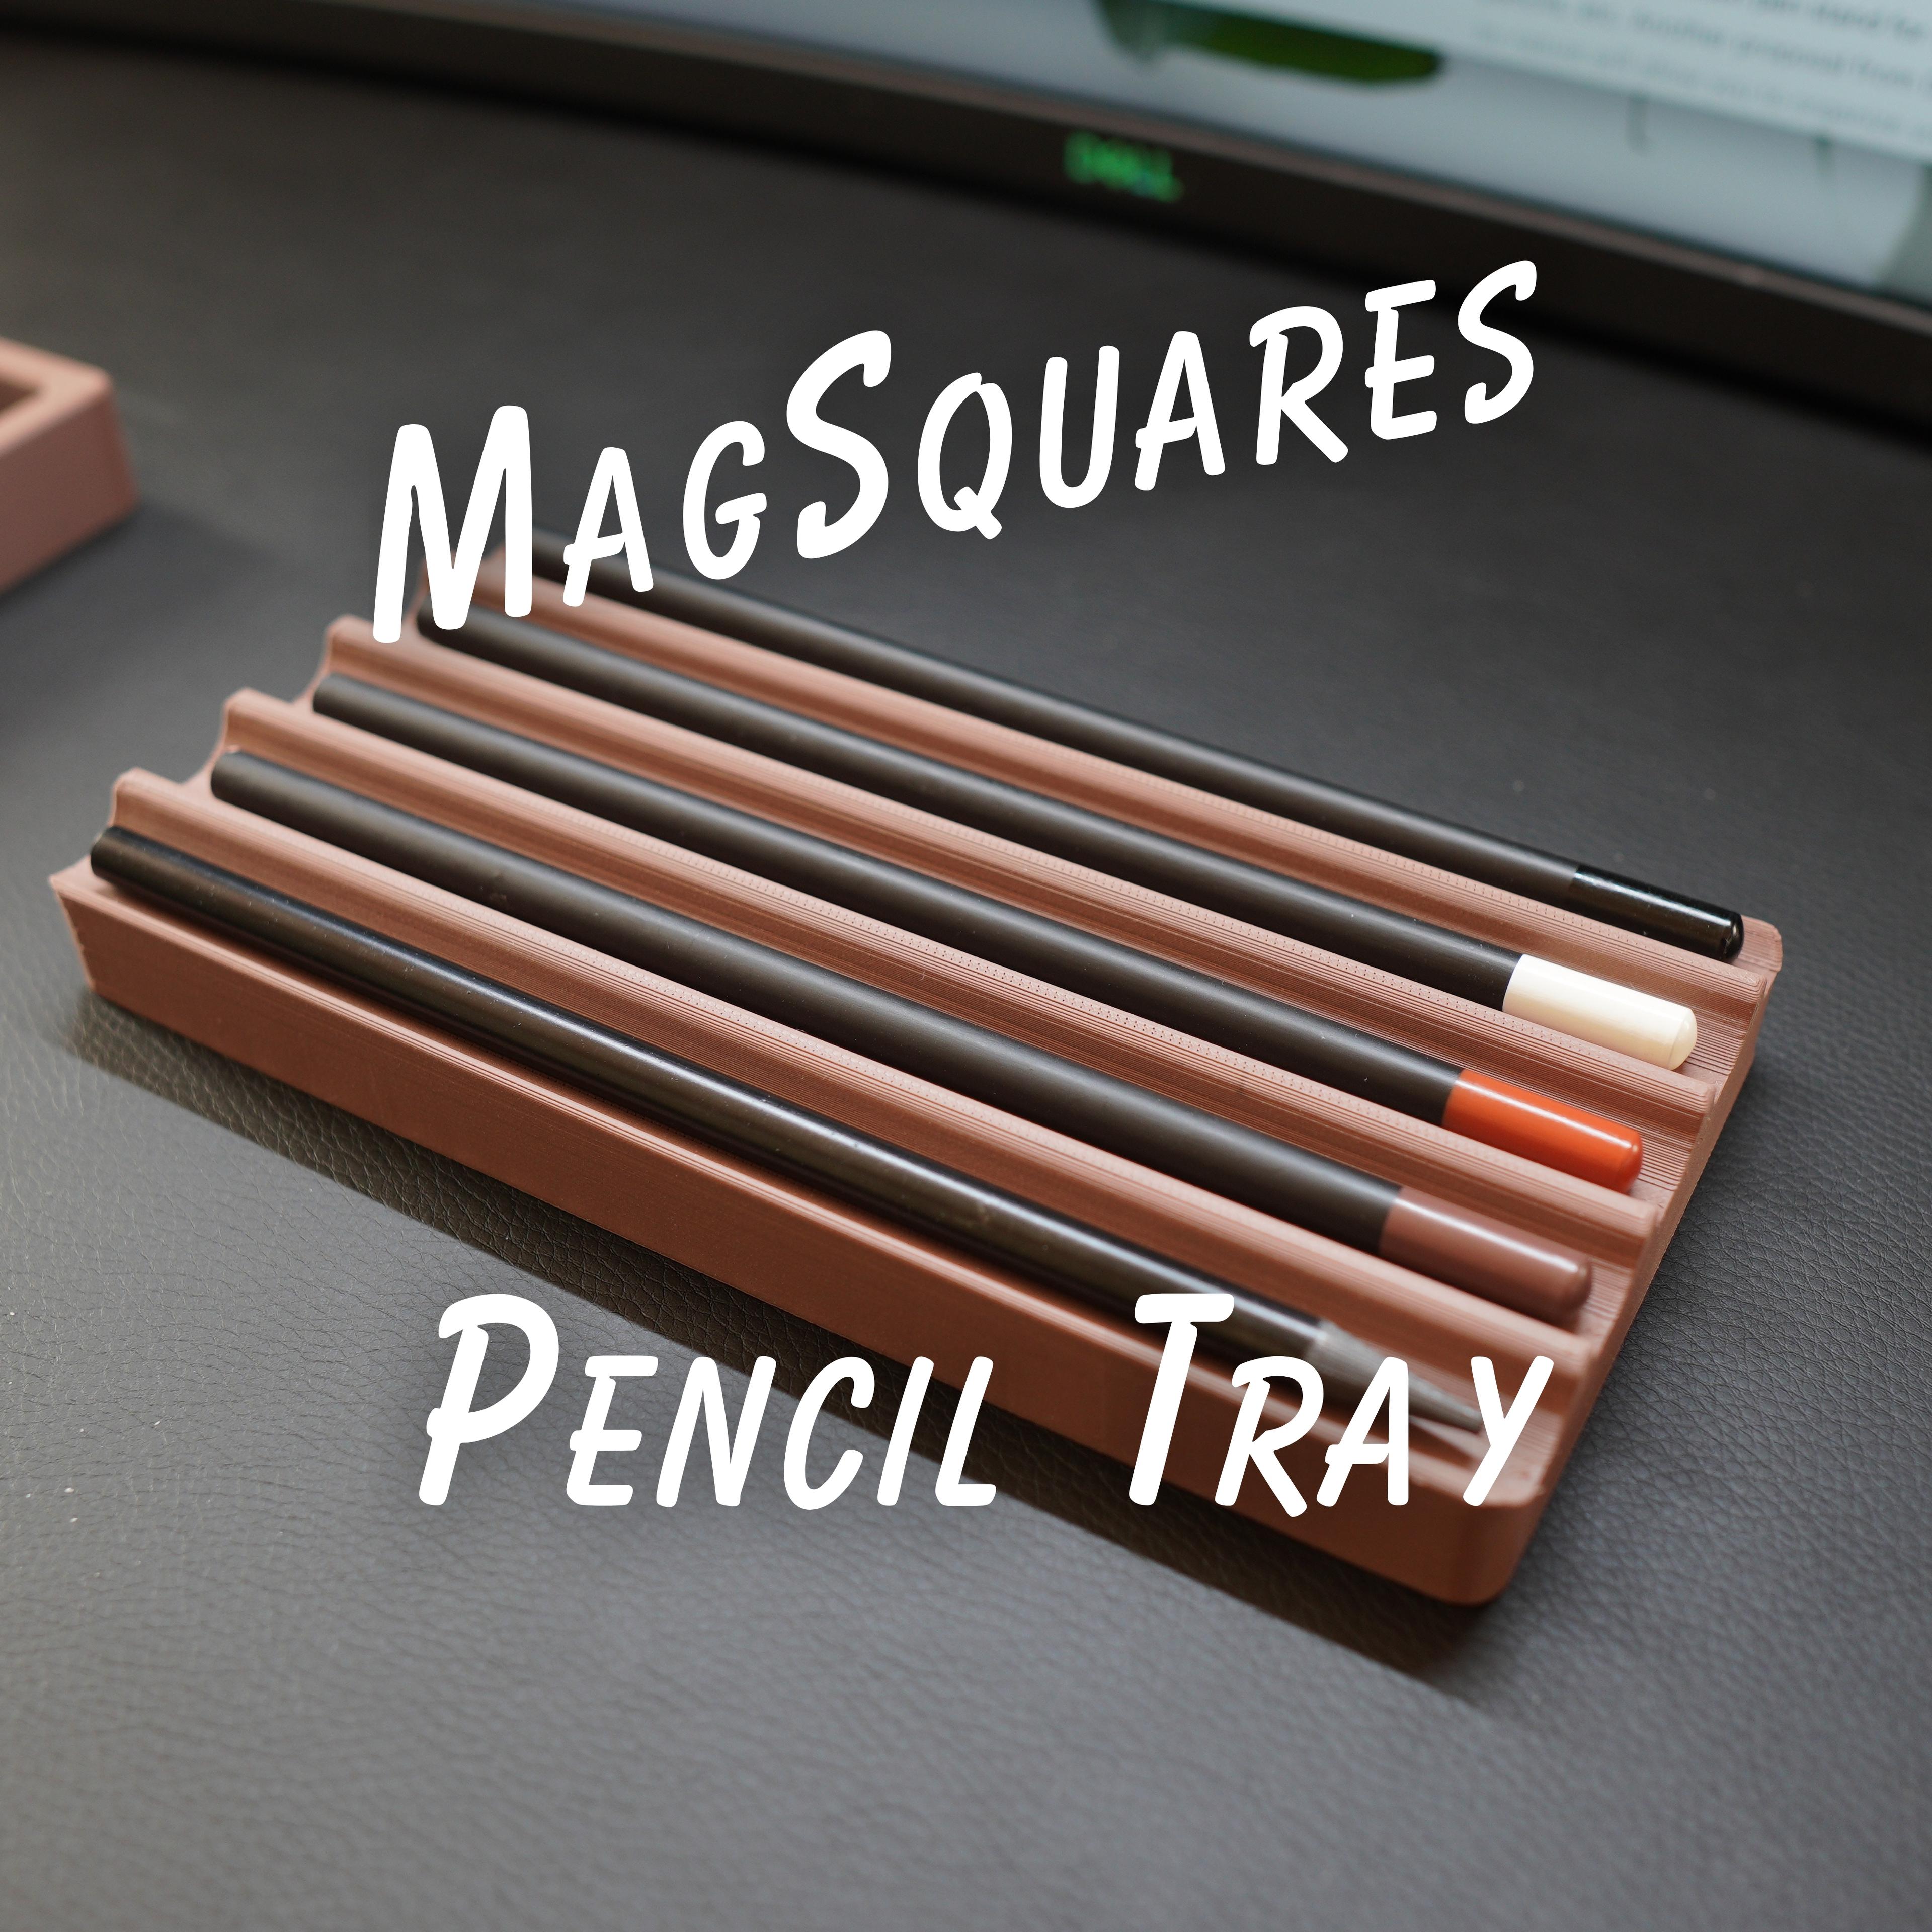 1x2 Pencil Tray - MagSquares 3d model